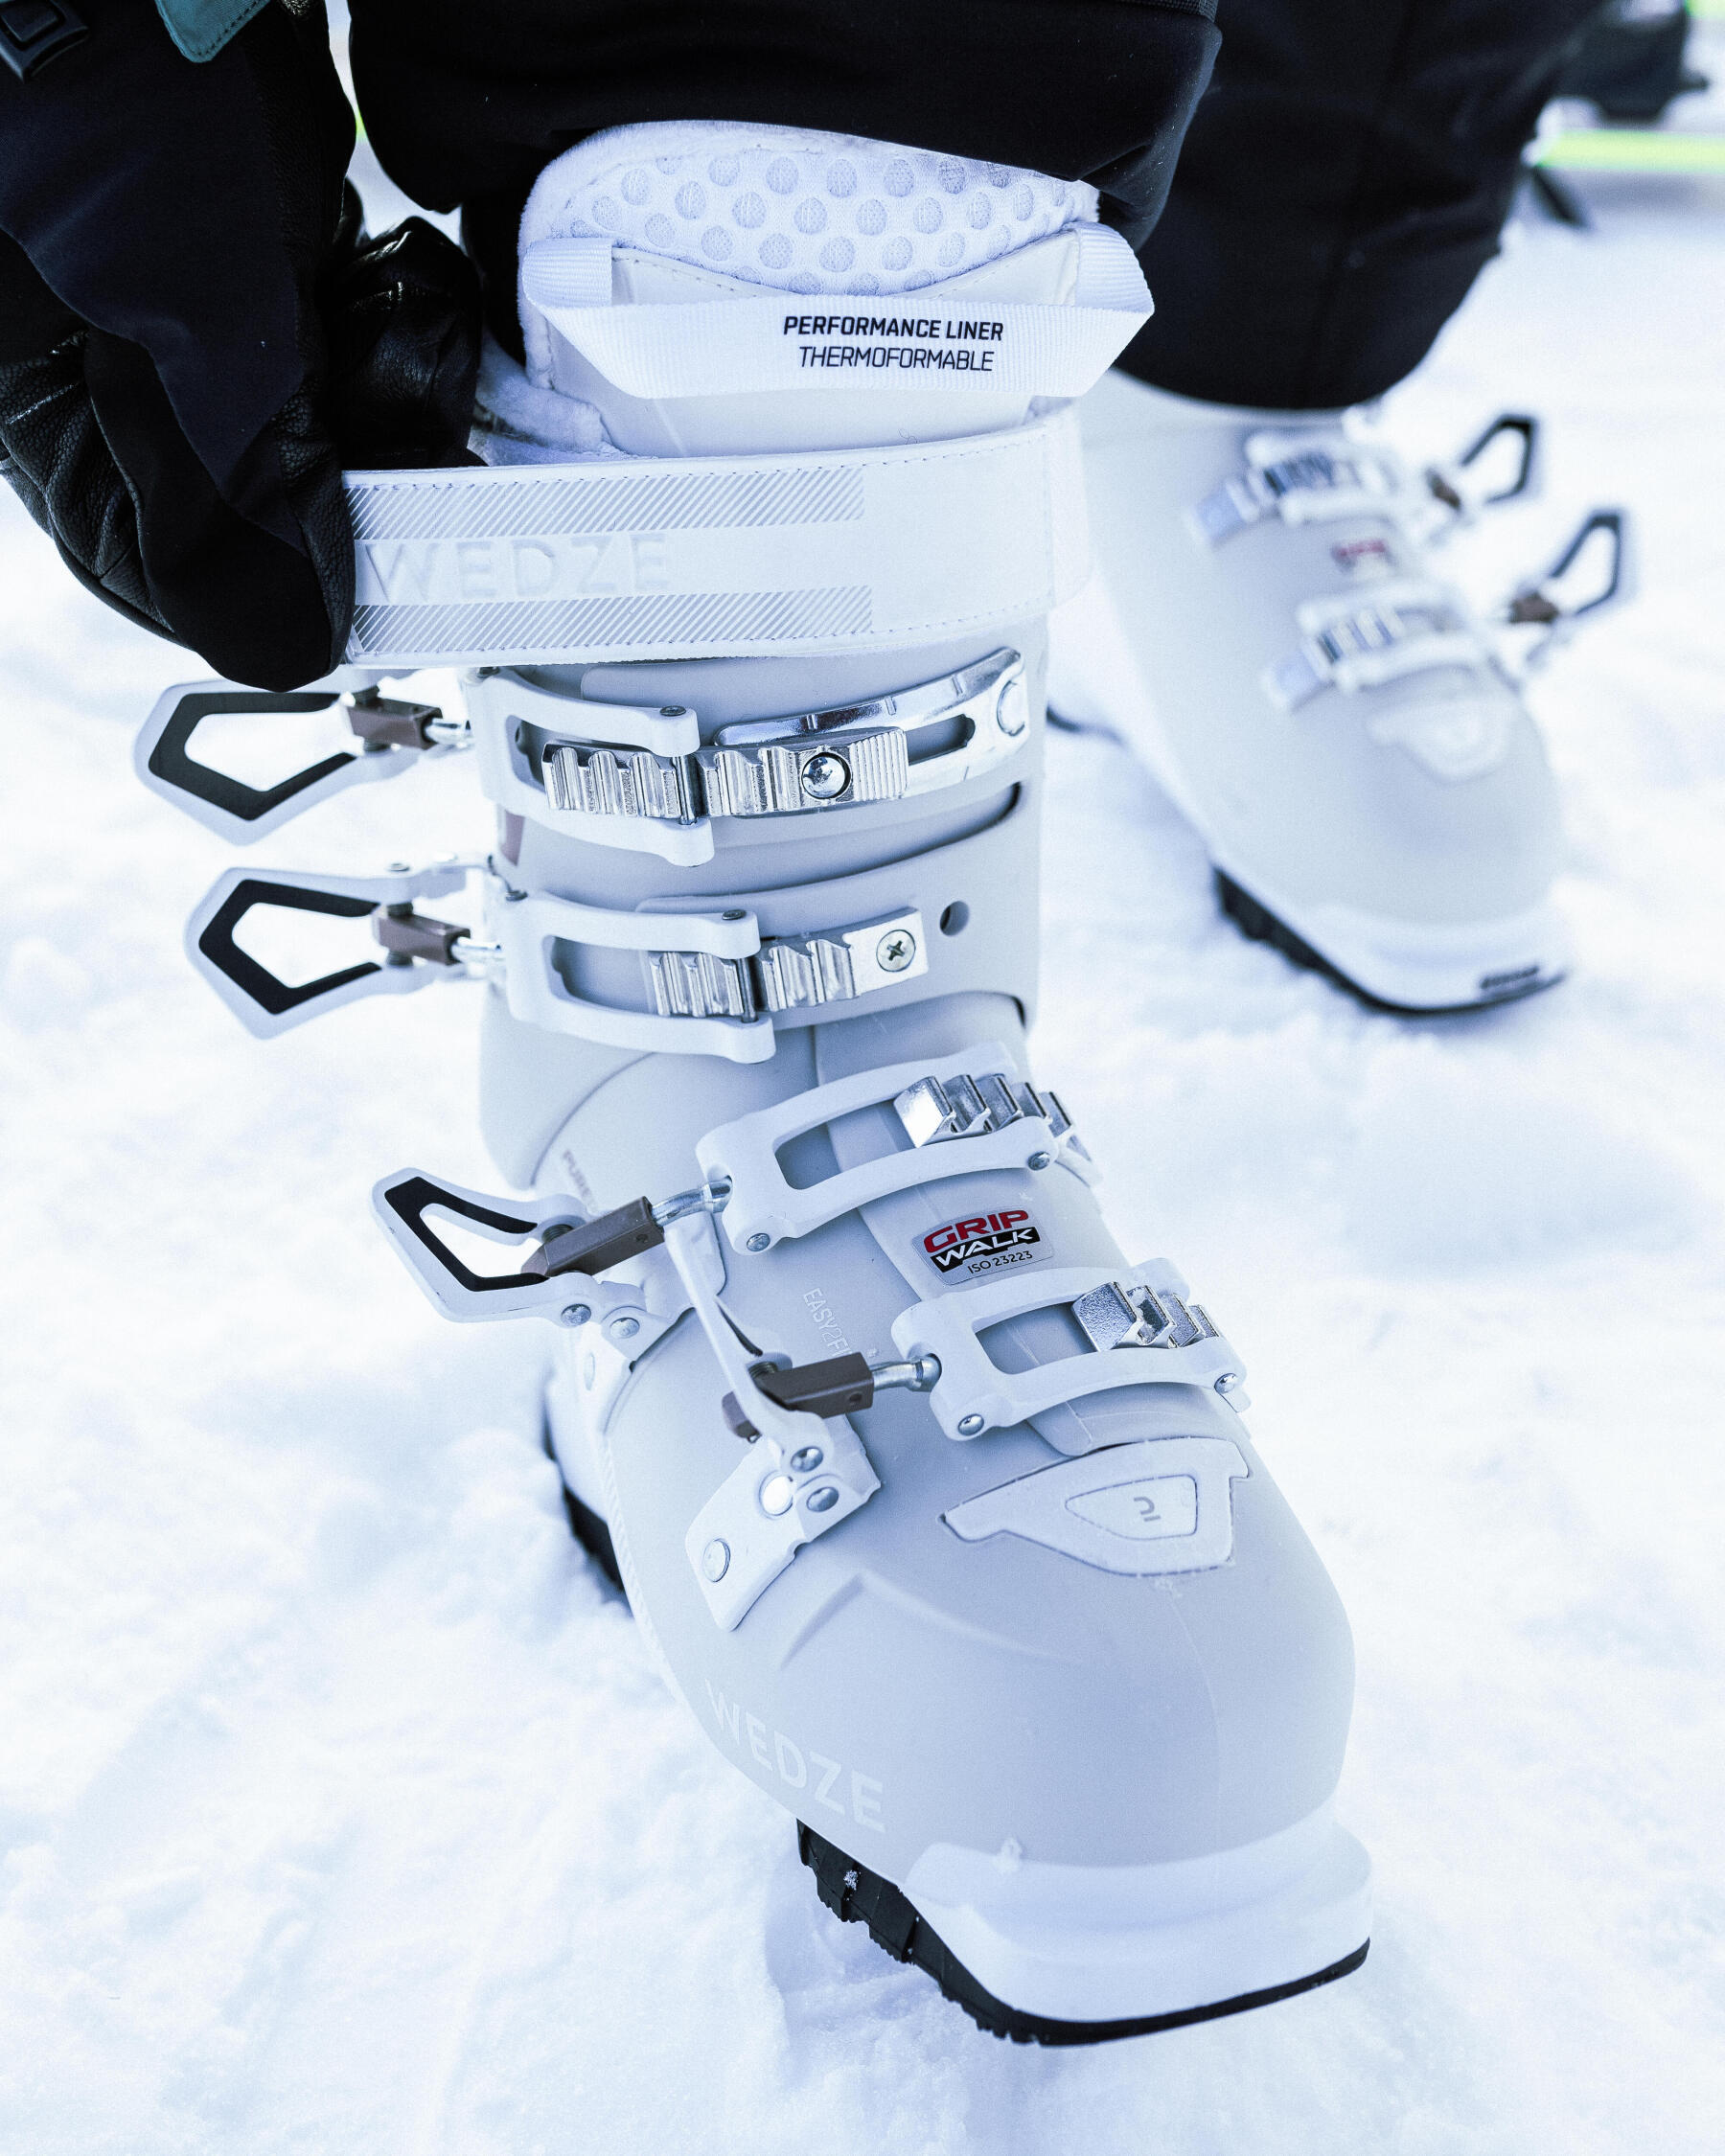 Fazer a manutenção e reparação das botas de ski